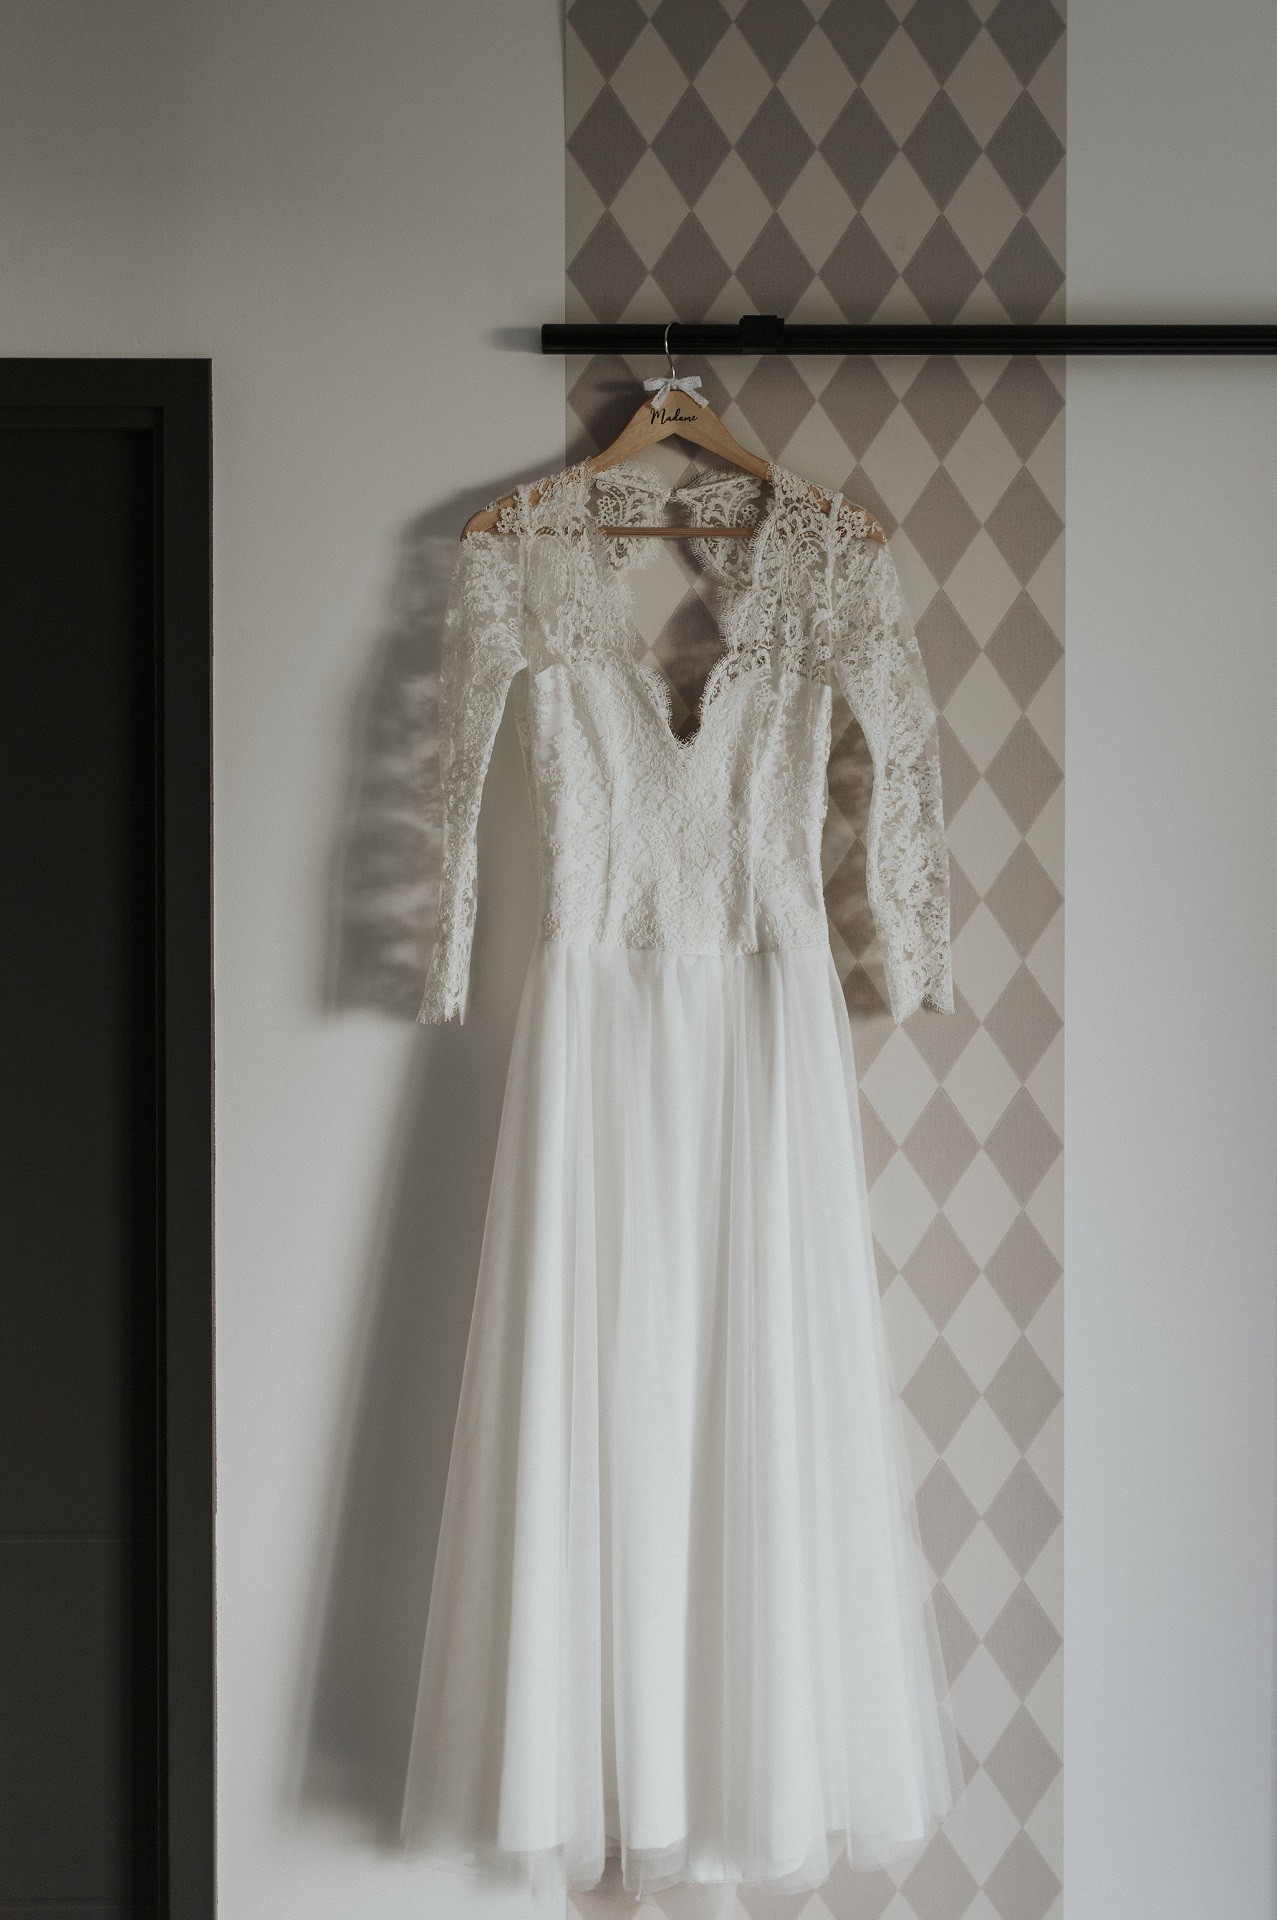 cécile à confiée la création de sa robe de mariée à l'atelier nantais kamélion-couture decouvrez son témoignage